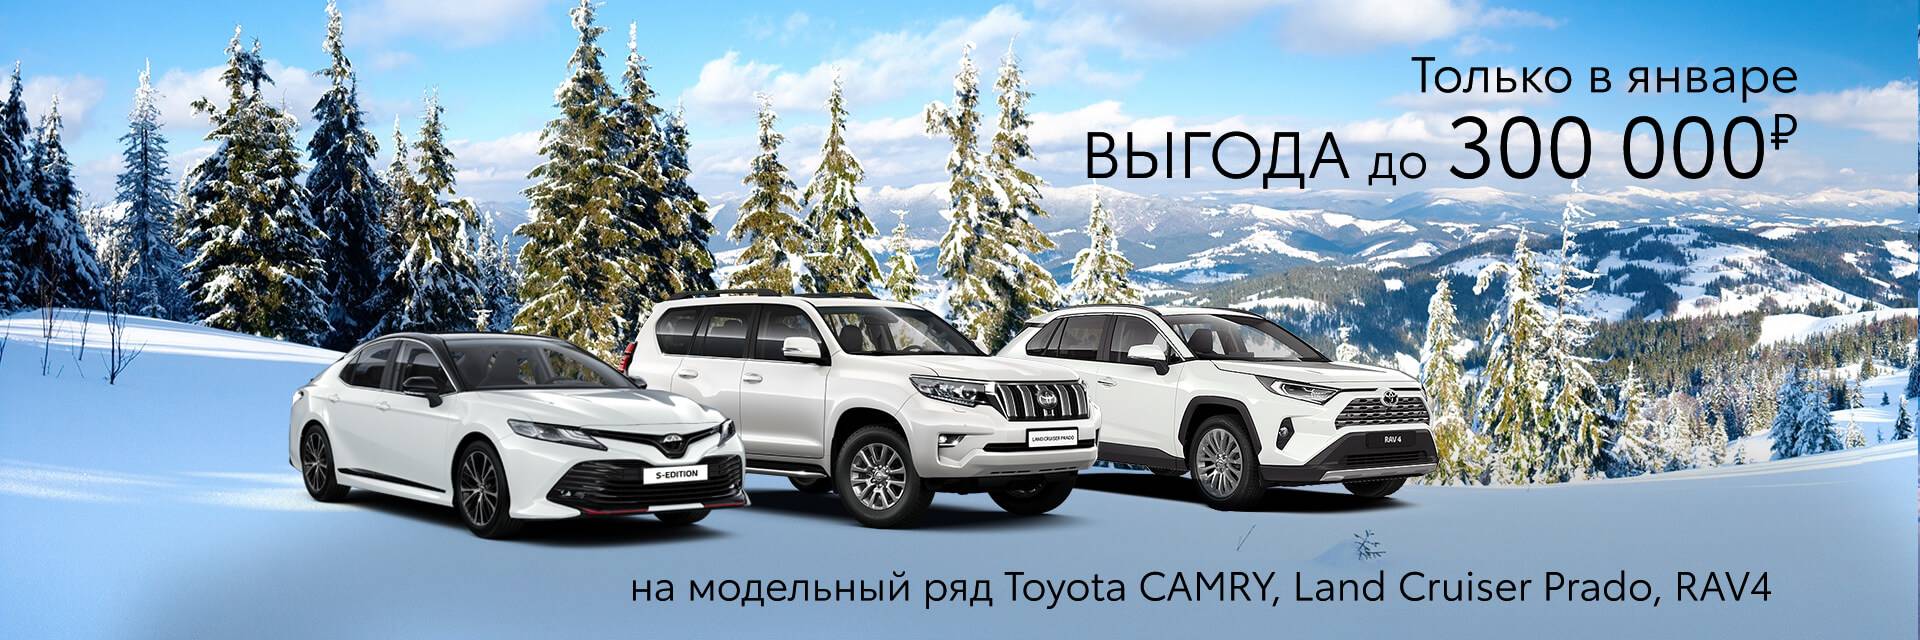 Возможная выгода 300 000 рублей на модельный ряд Toyota Land Cruiser Prado, Camry и RAV4